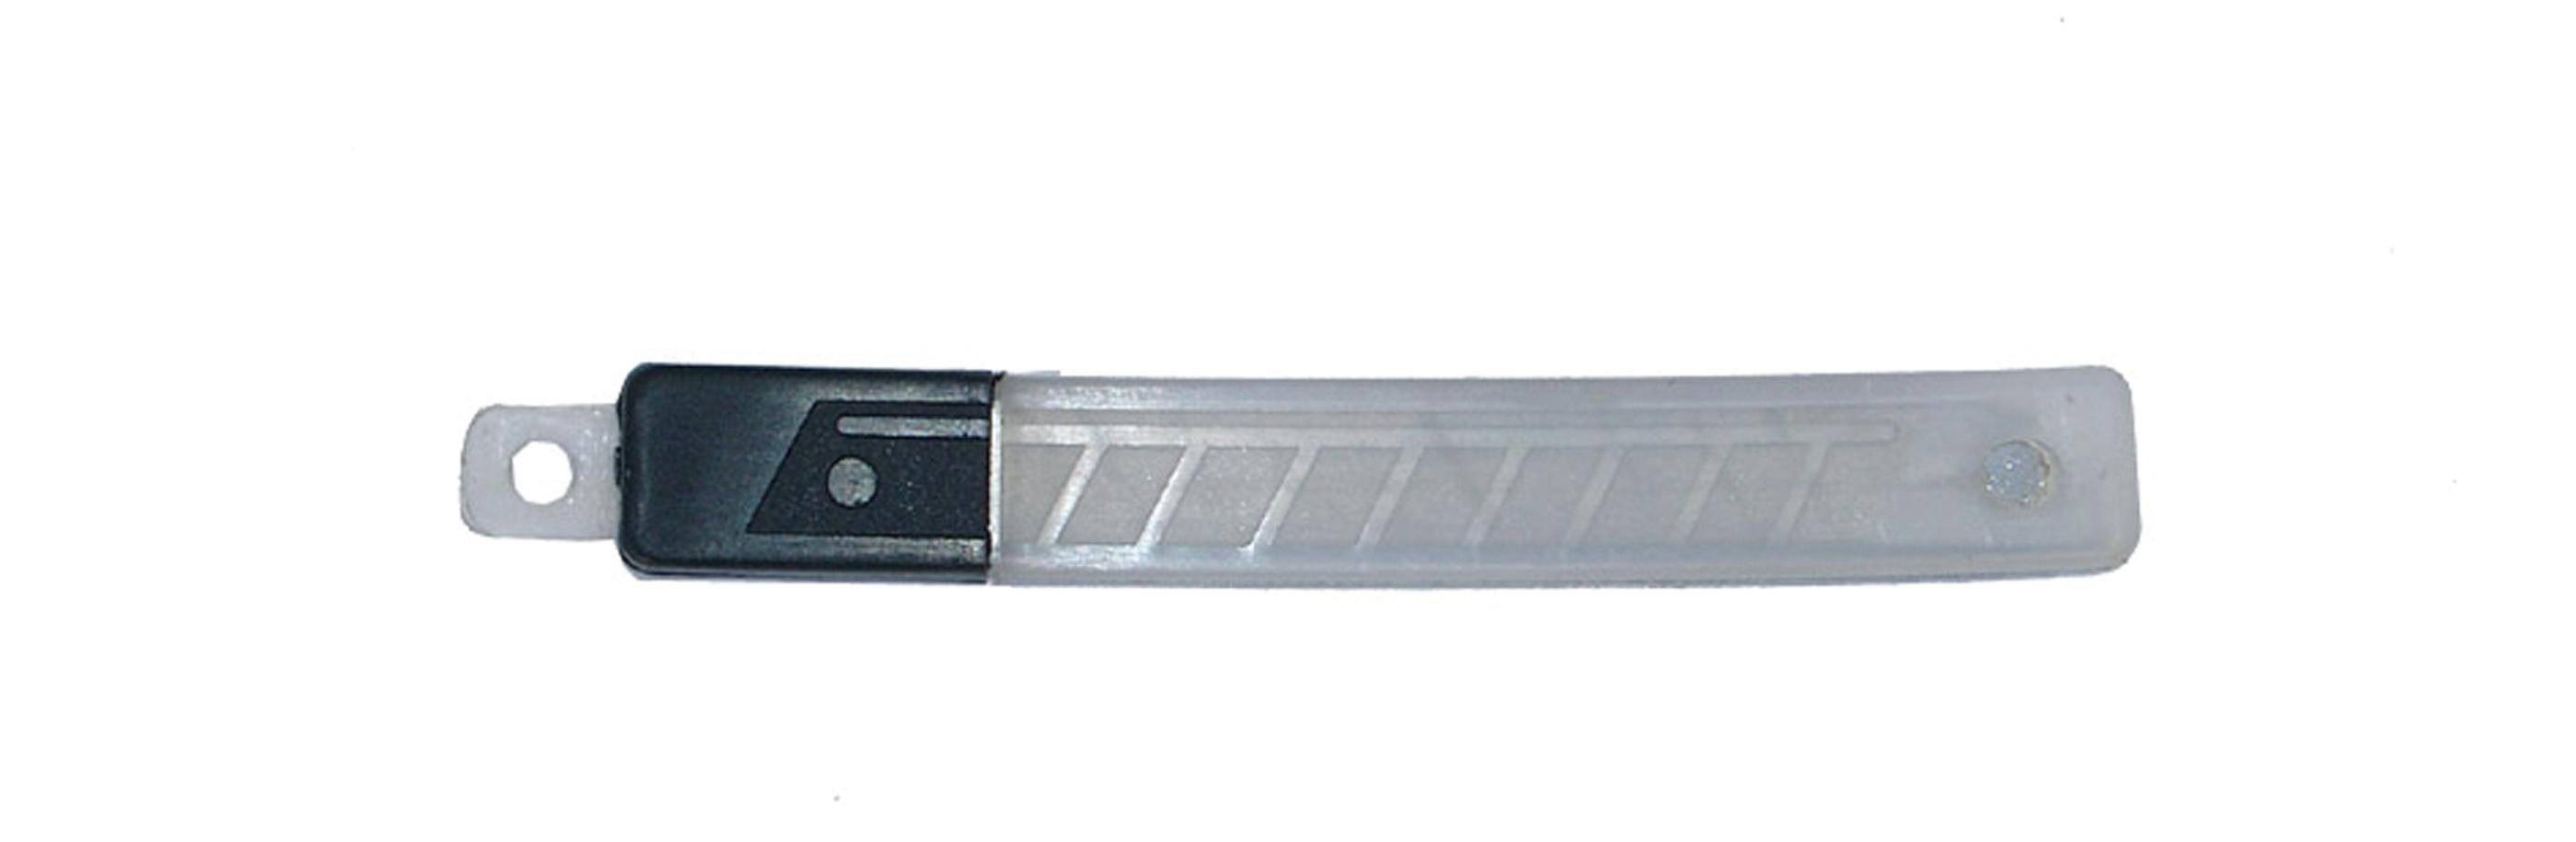 BGS technic Cuttermesser Ersatzklingen-Satz, 9 mm, 10-tlg.